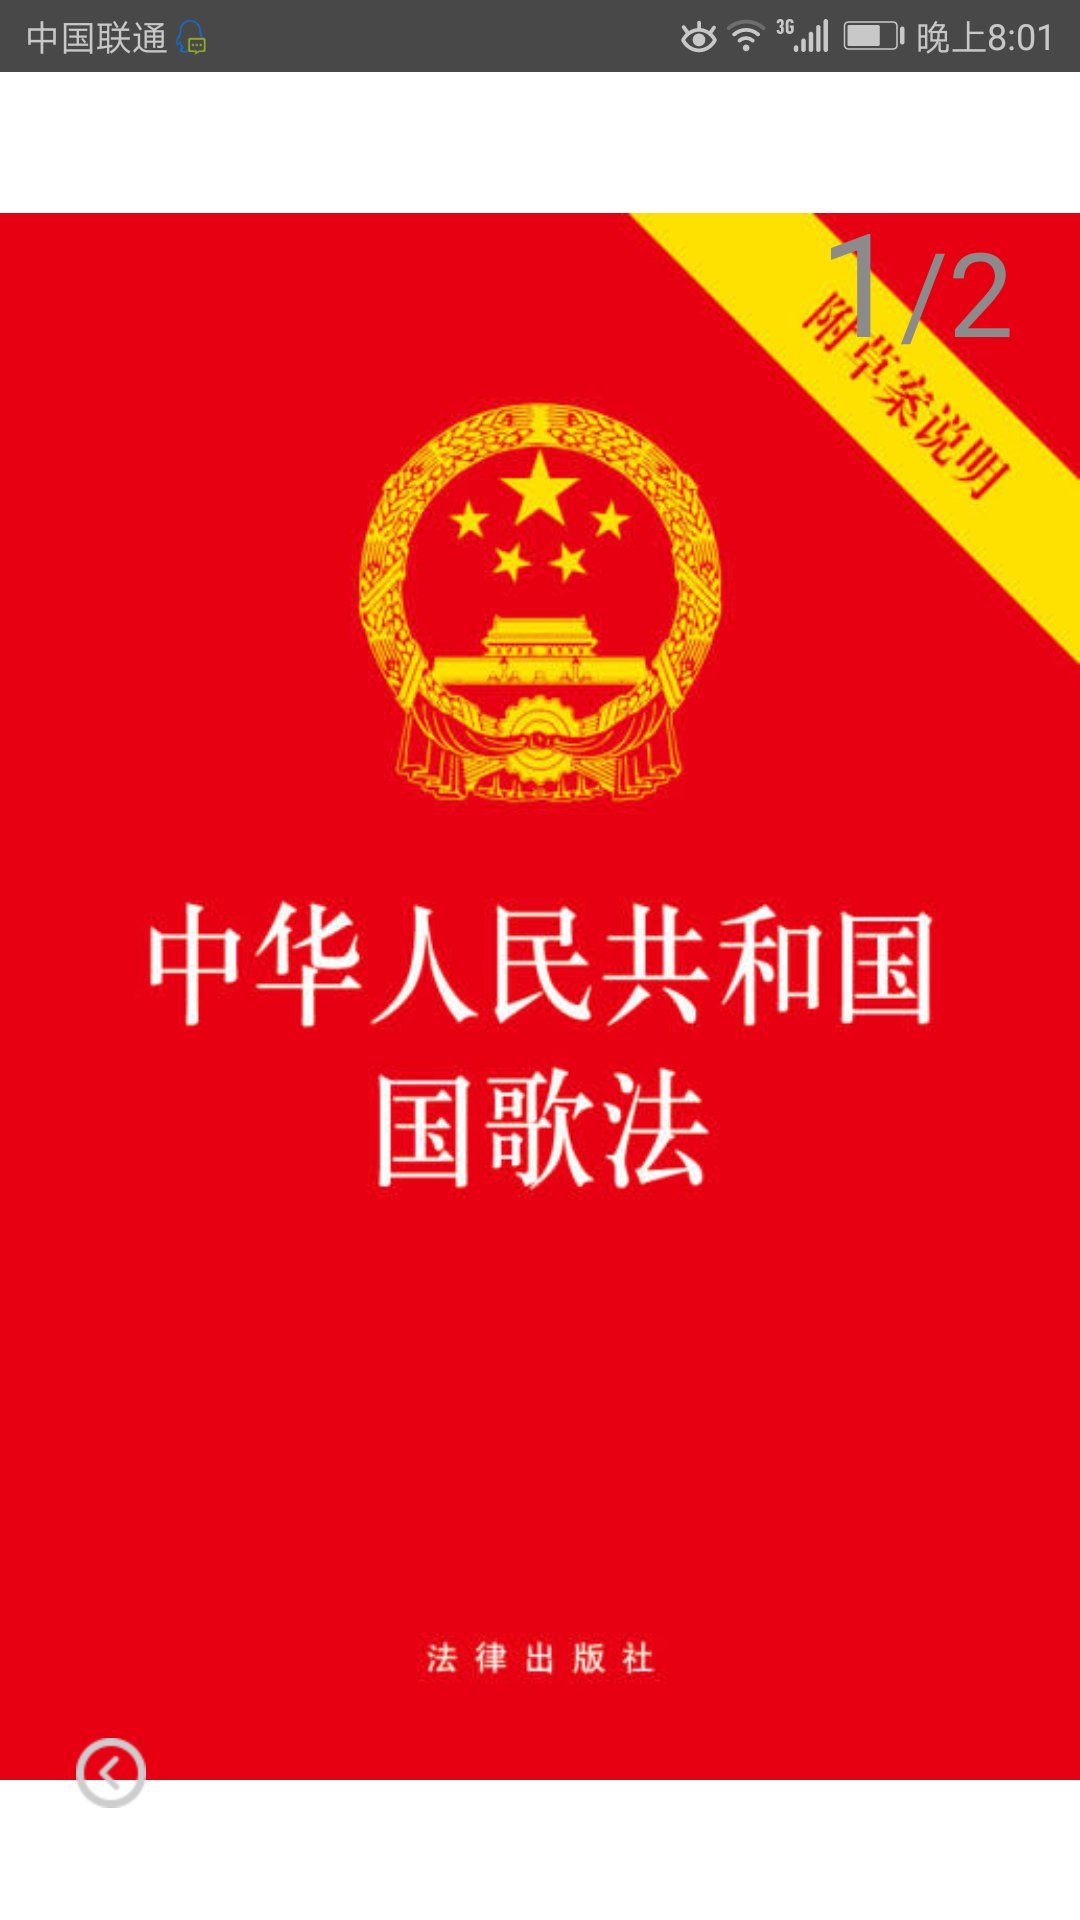 中华人民共和国国歌是我们民族的引以为豪的精神向导之一，了解相关法律法规也是作为爱国公民的义务和责任。